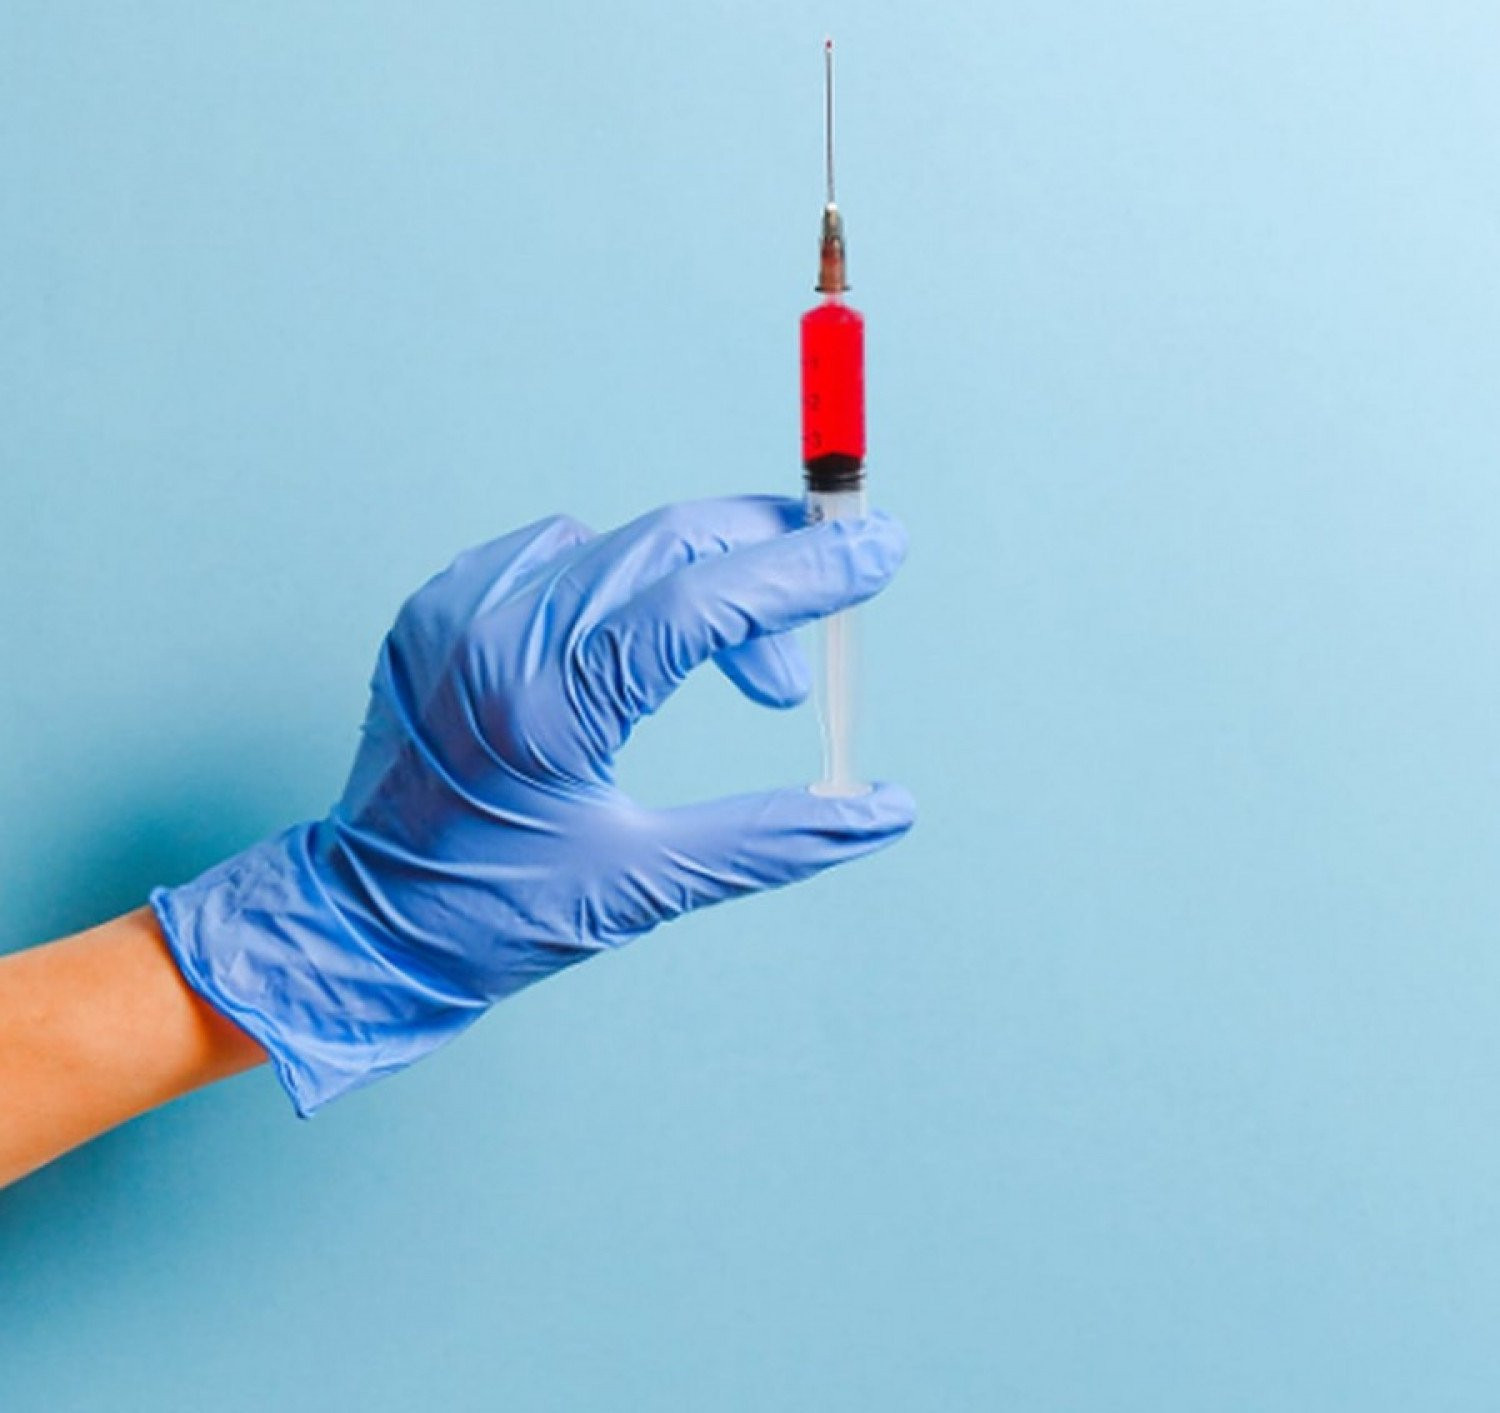 Ρωσία: Εμβόλιο κατά του κορονοϊού δοκιμάστηκε με επιτυχία σε ανθρώπους